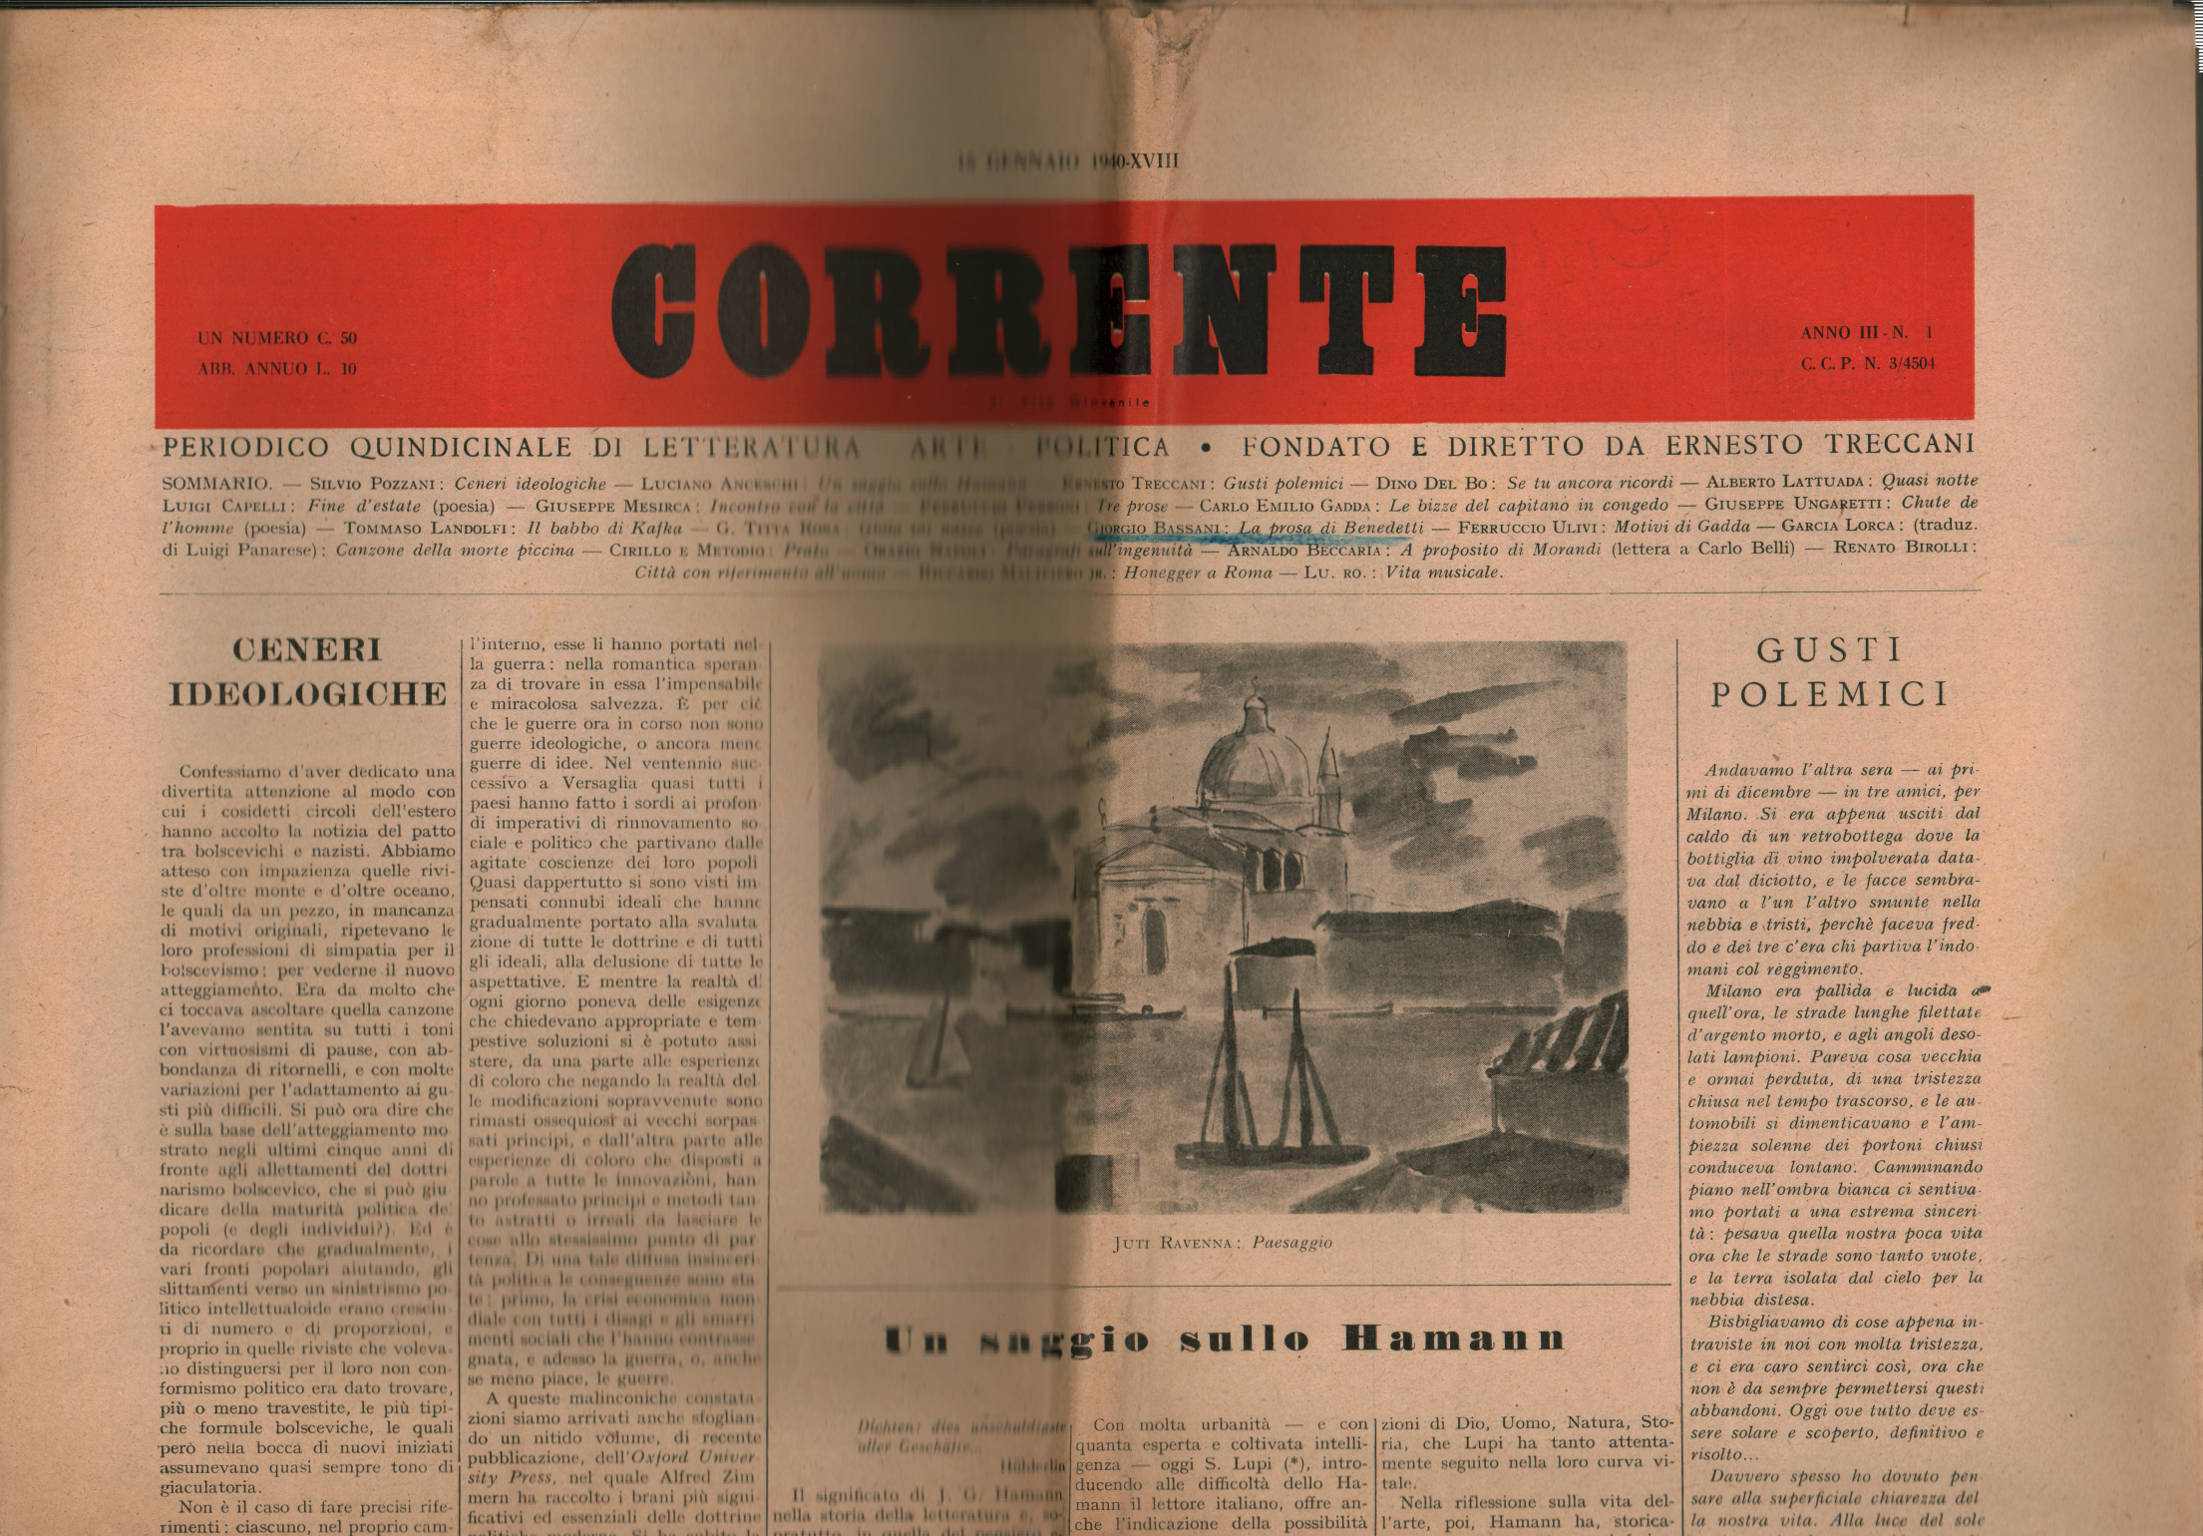 Corrente di Vita Giovanile, periodico quindicinale di Letteratura, Arte, Politica Anno III, n. 1, 15 Gennaio 1940